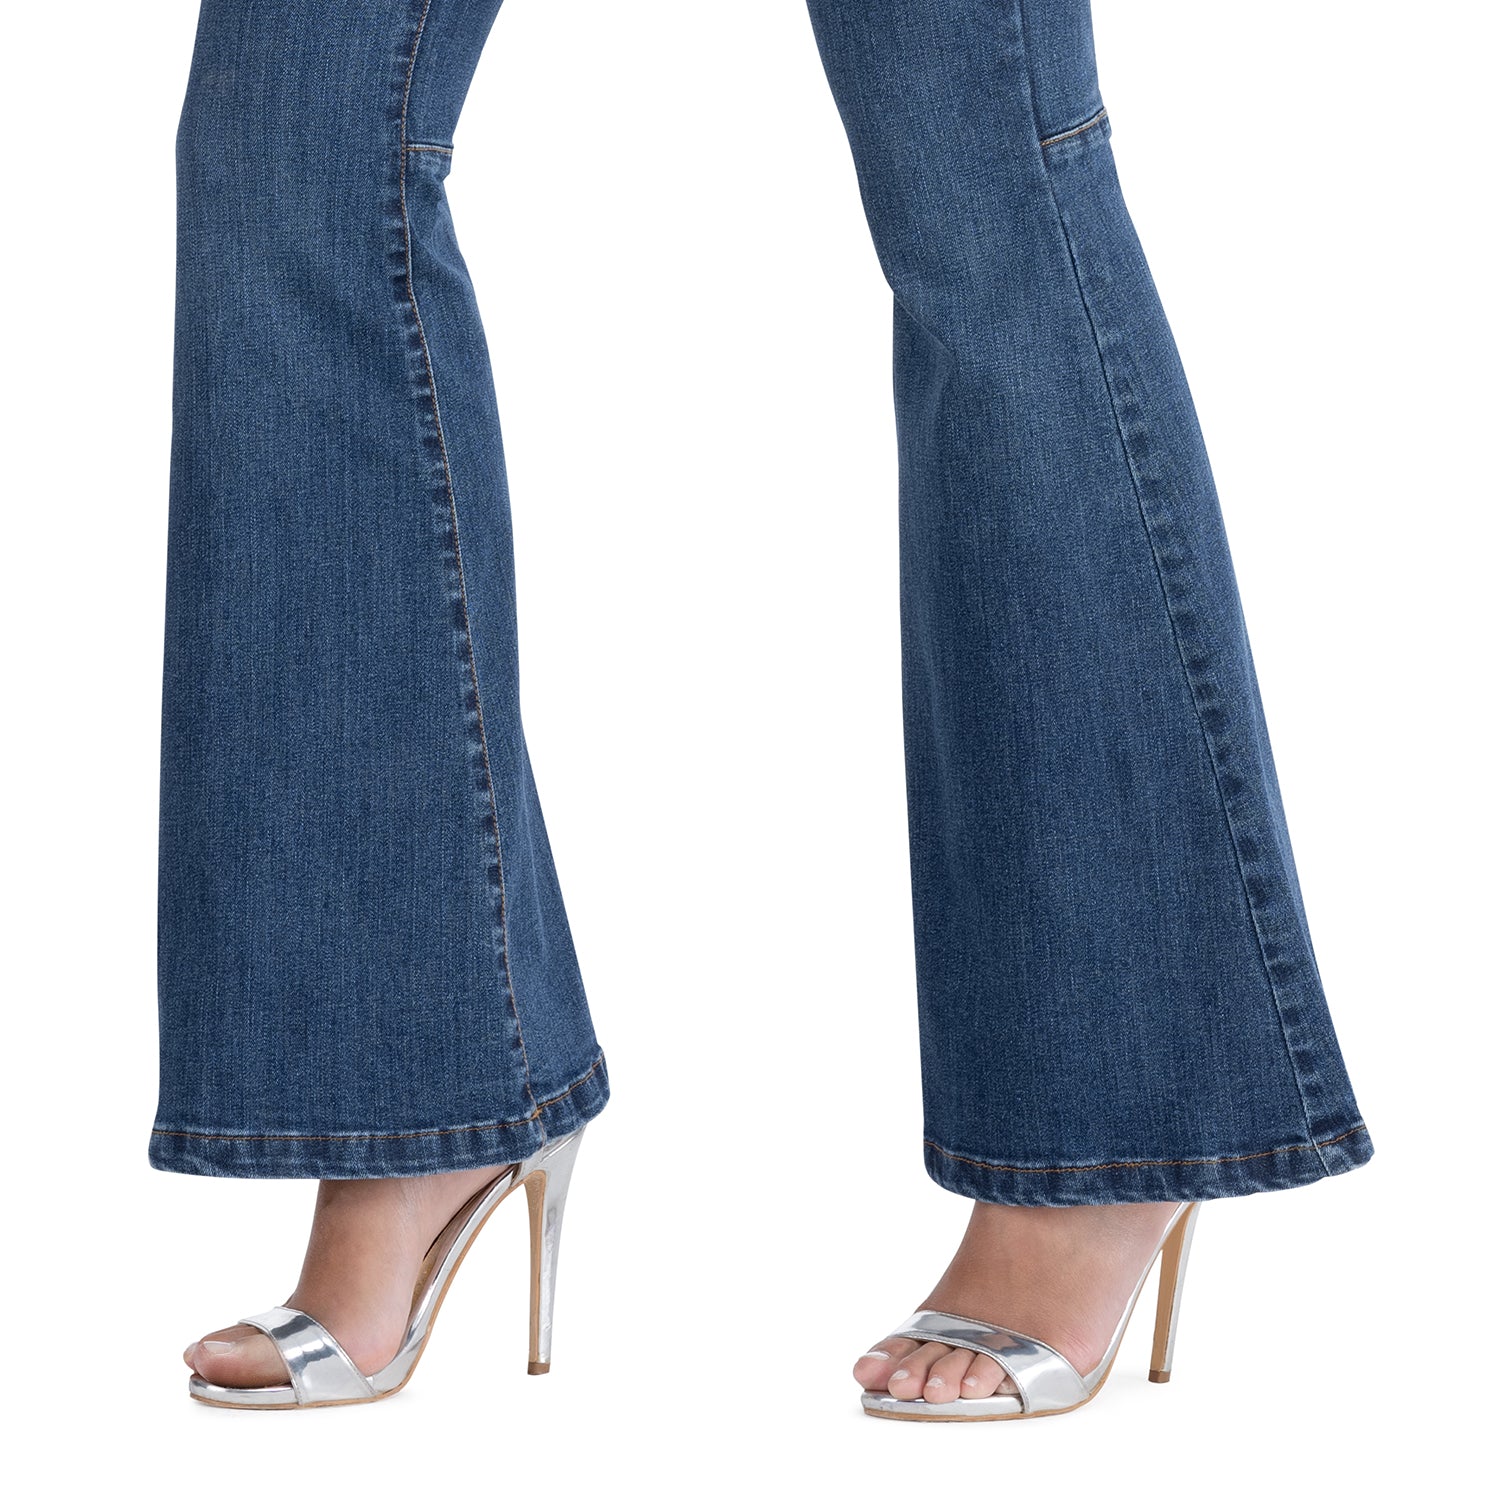 Jeans 5 Tasche Elasticizzato, Fondo a Campana - Made in Italy